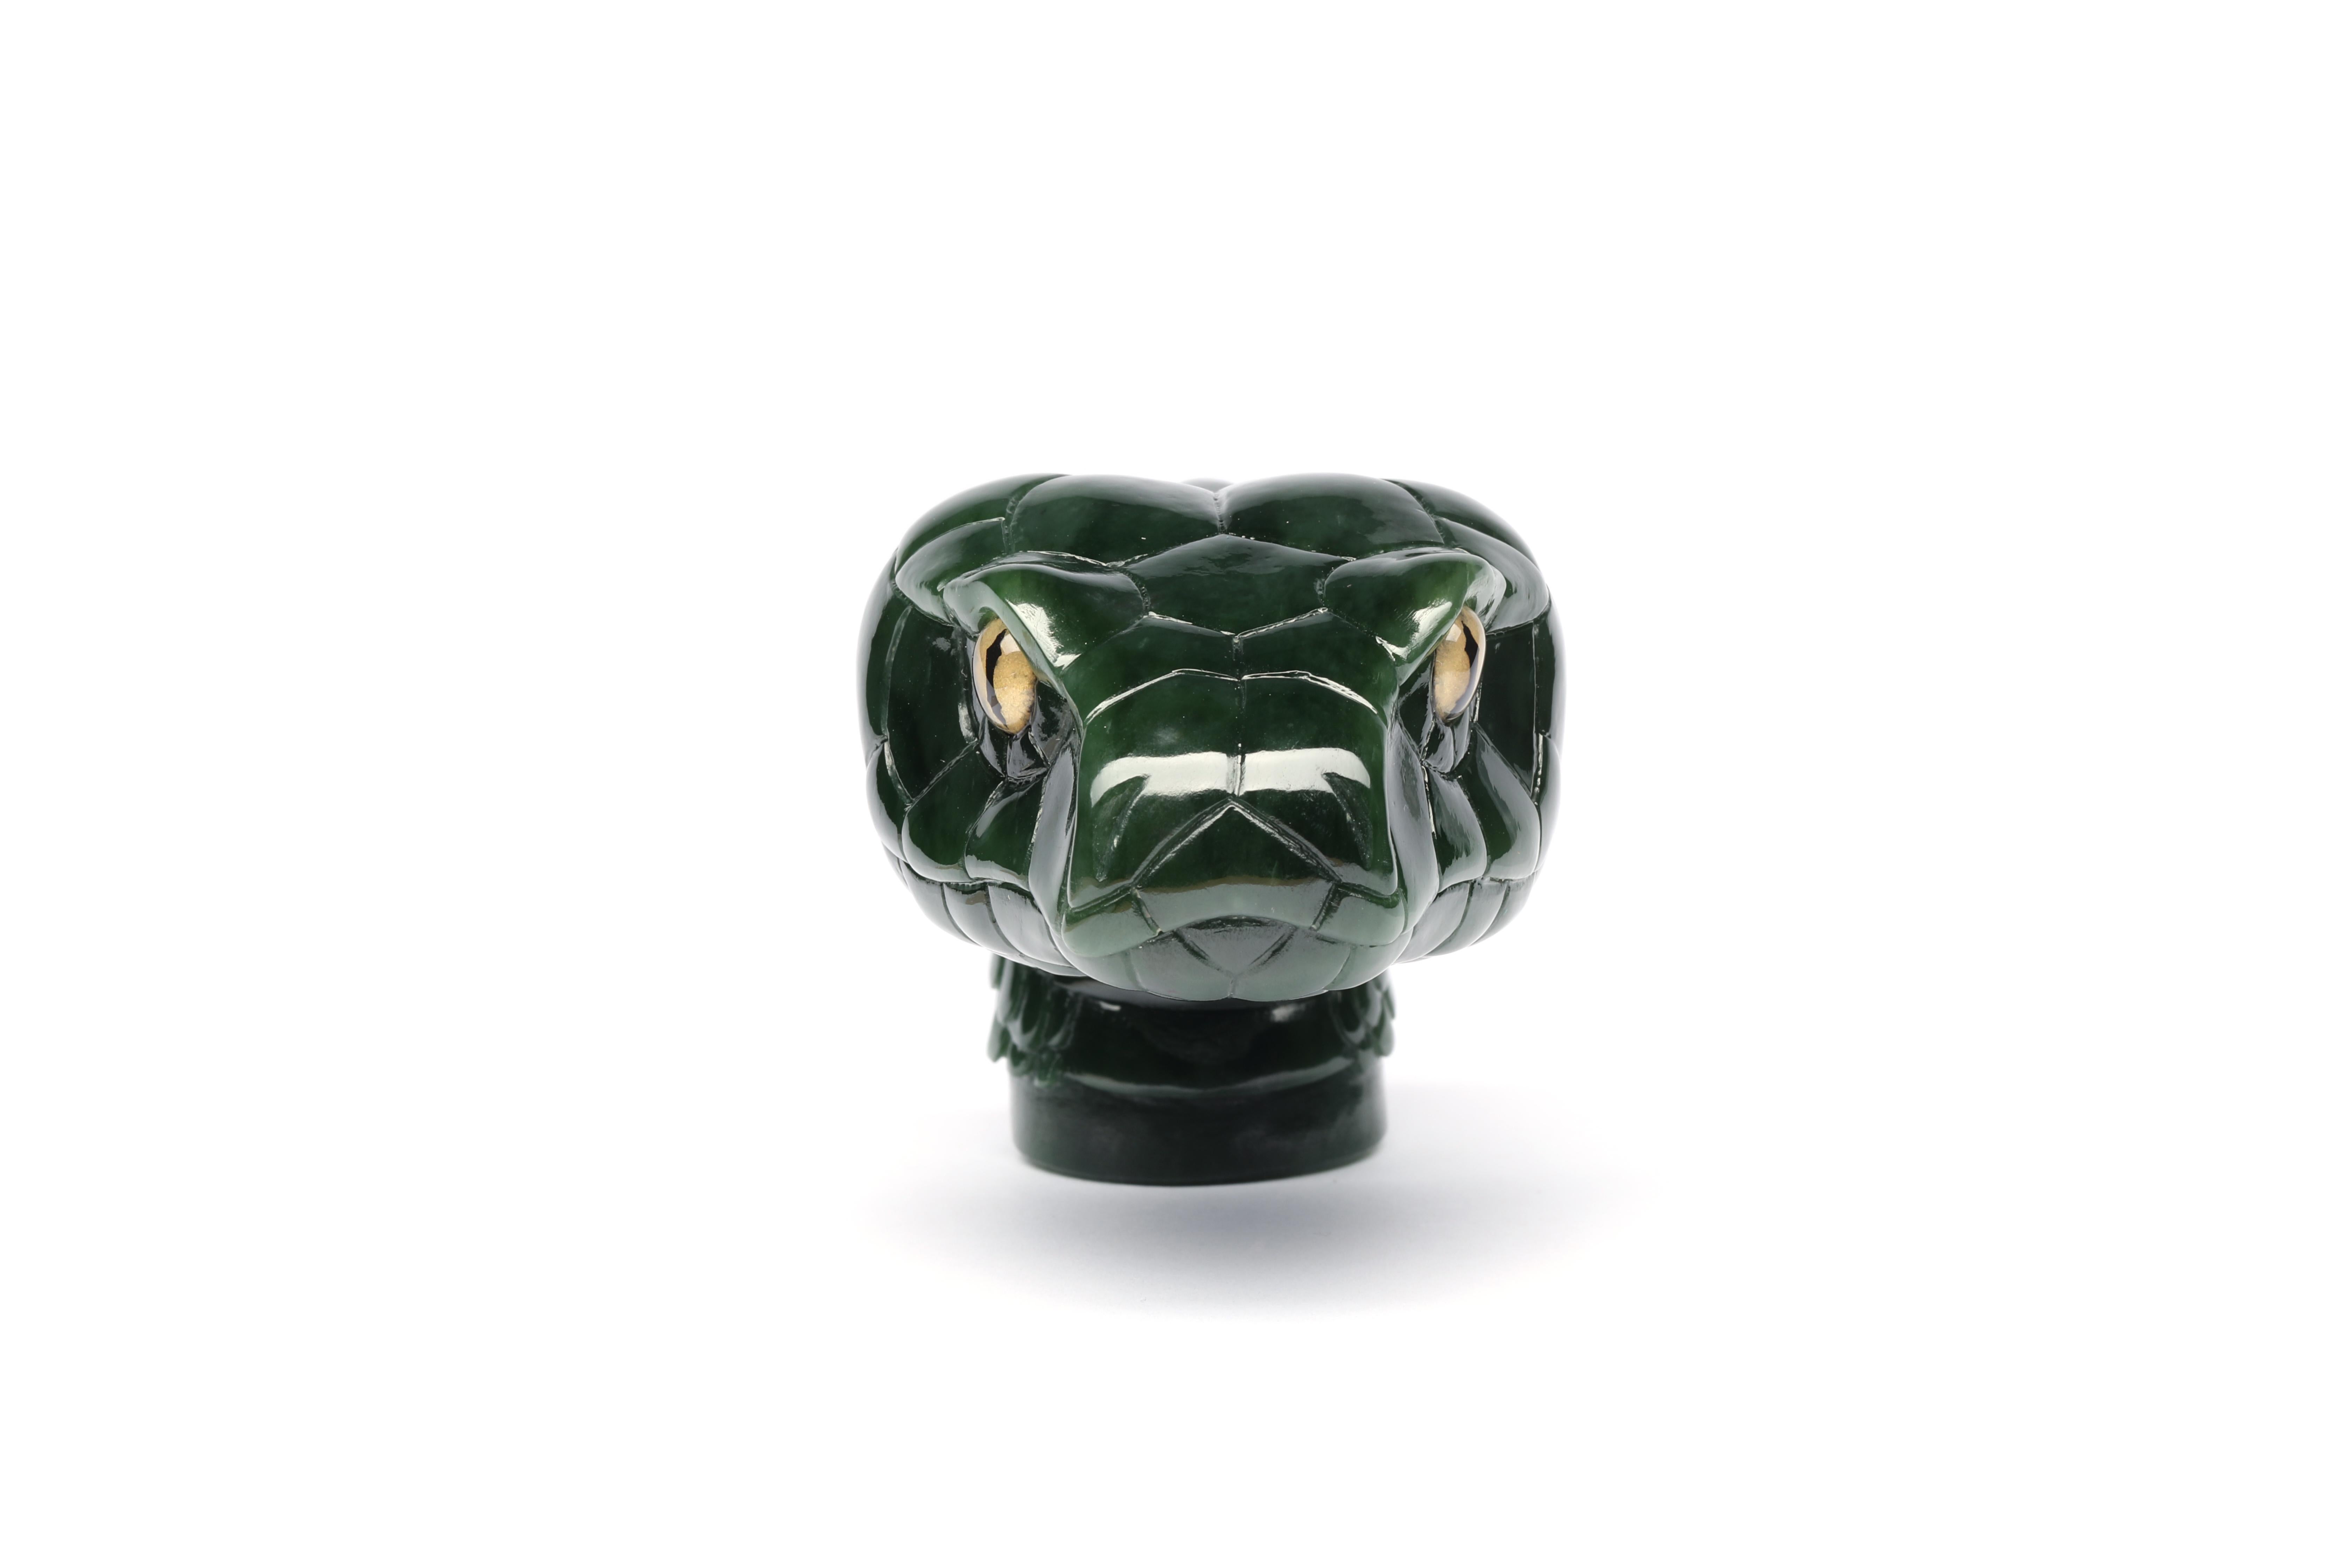 Cette extraordinaire sculpture de serpent en jade peut être conçue sur mesure pour devenir l'objet de vos rêves.  La première exécution a été faite pour être le manche d'un bâton de marche, mais les possibilités sont infinies.  

Le jade néphrite de